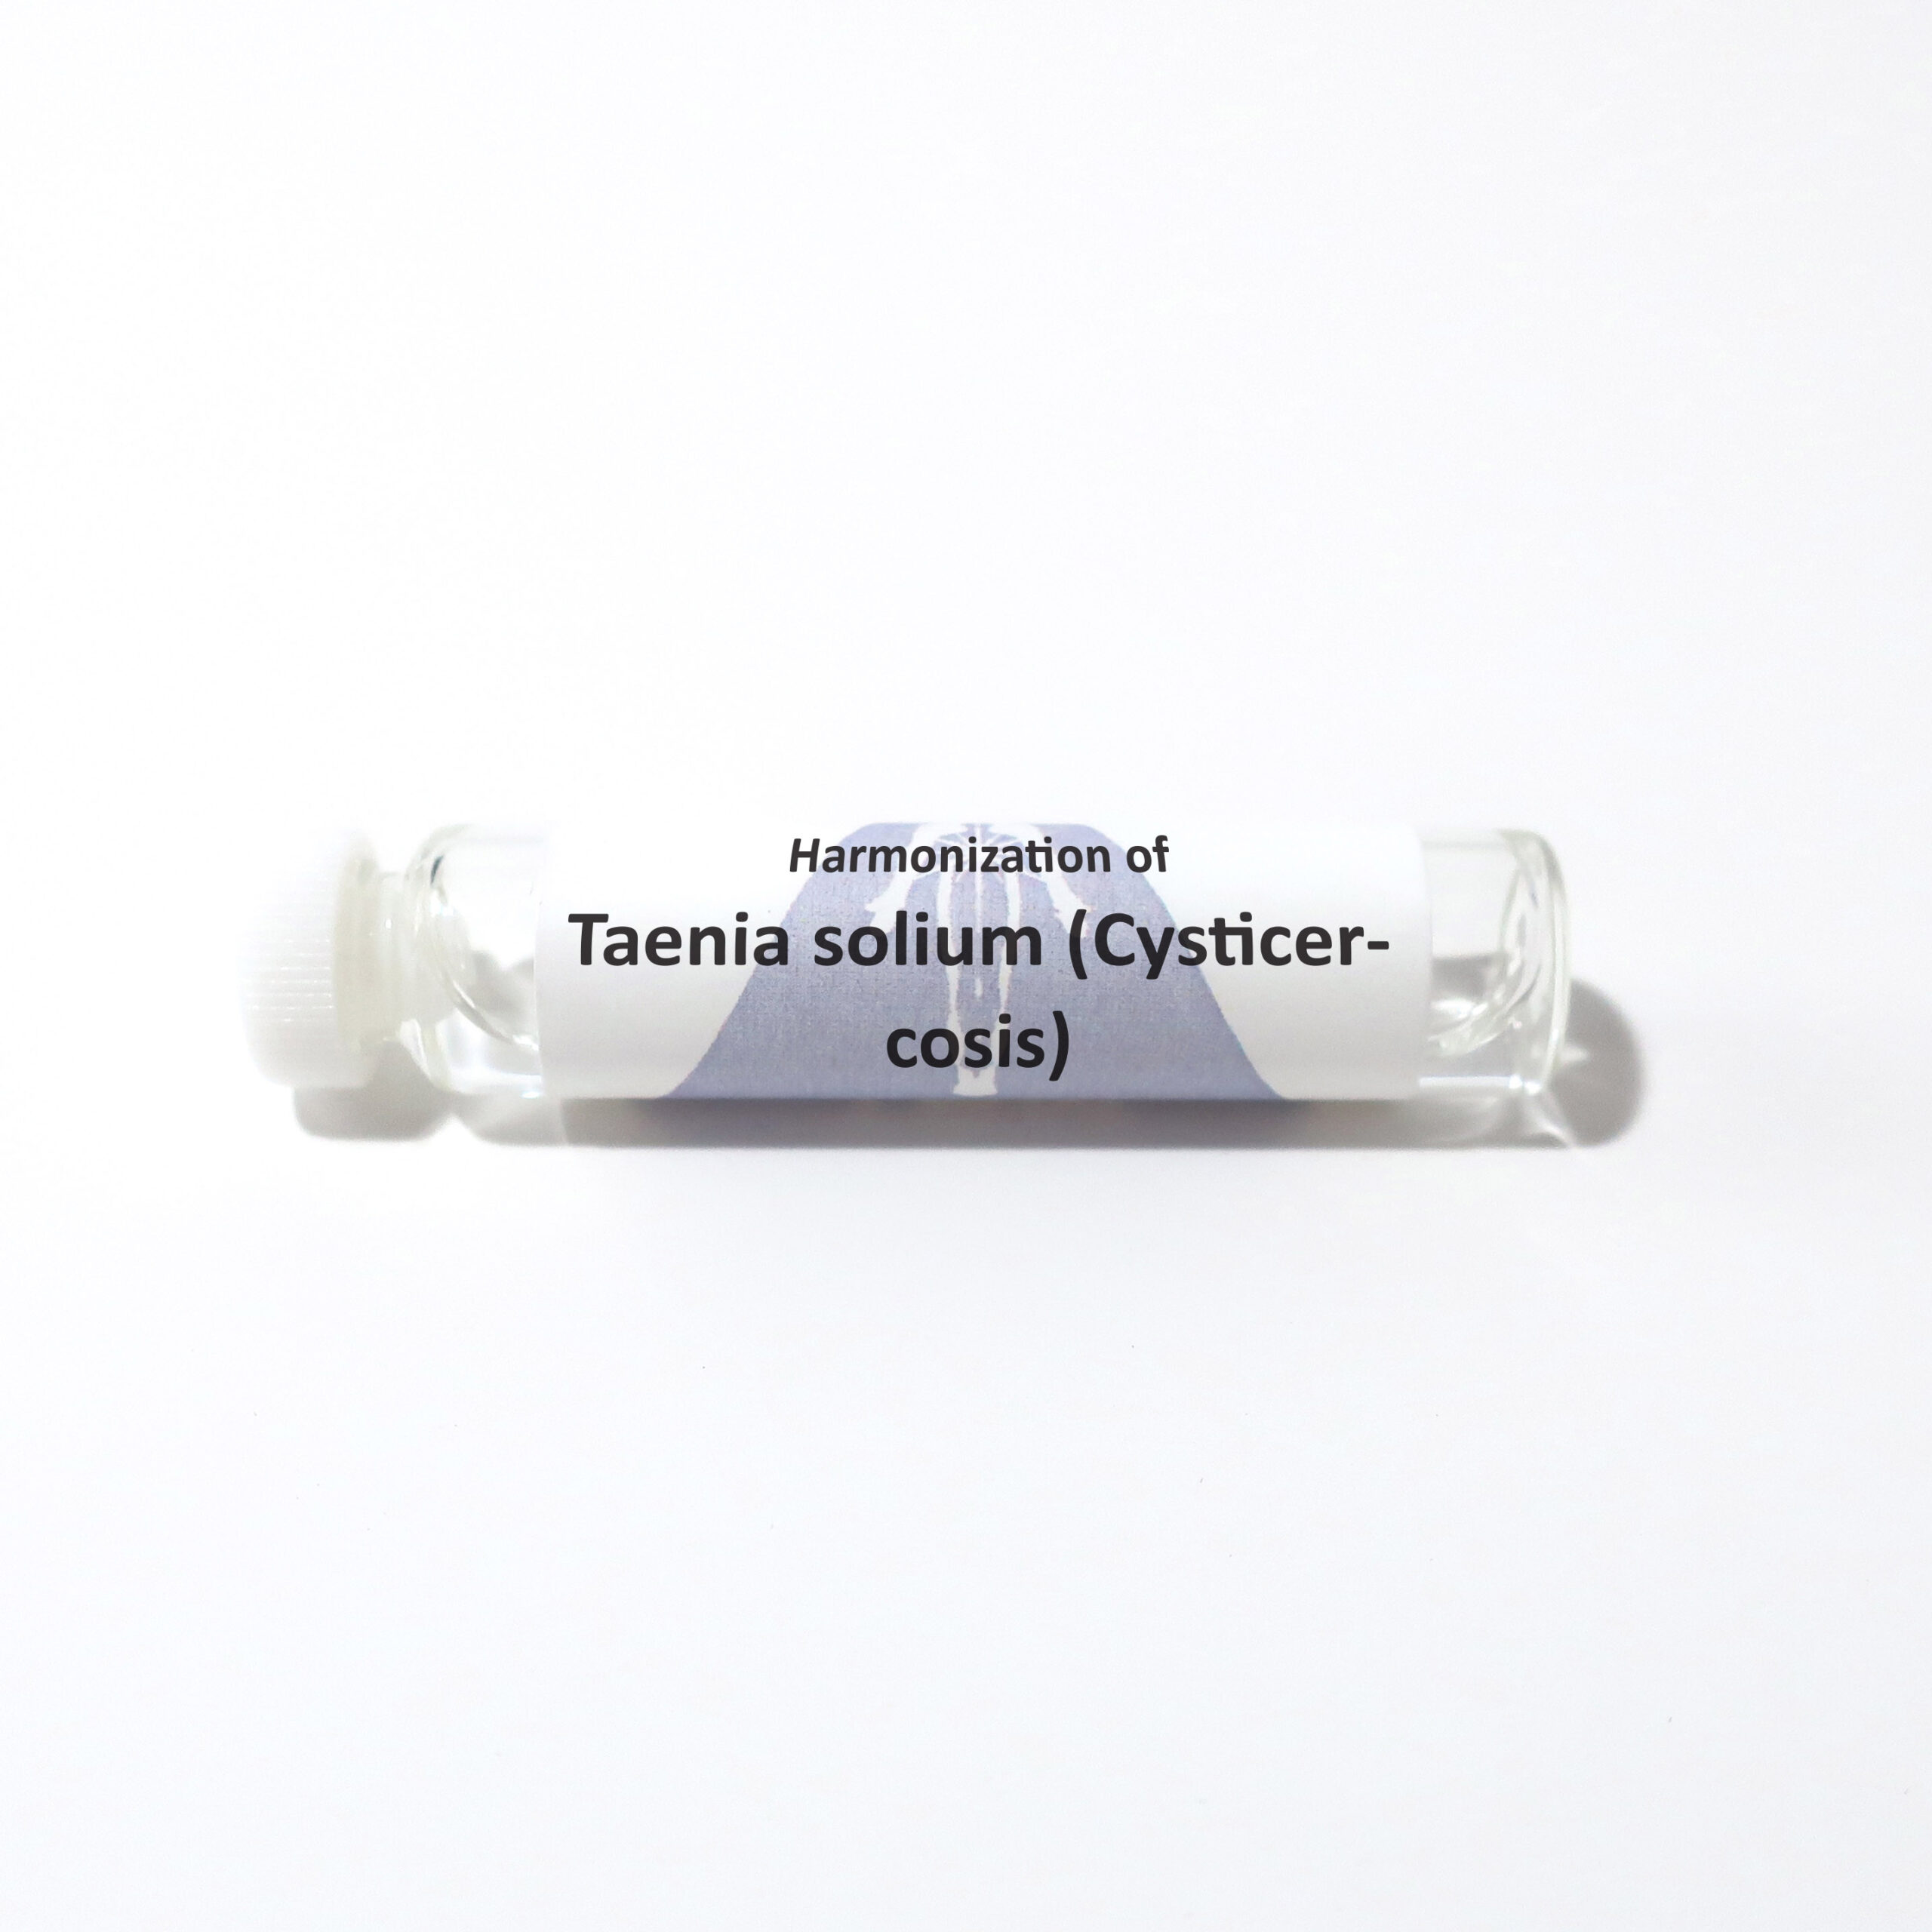 Taenia solium (Cysticercosis)